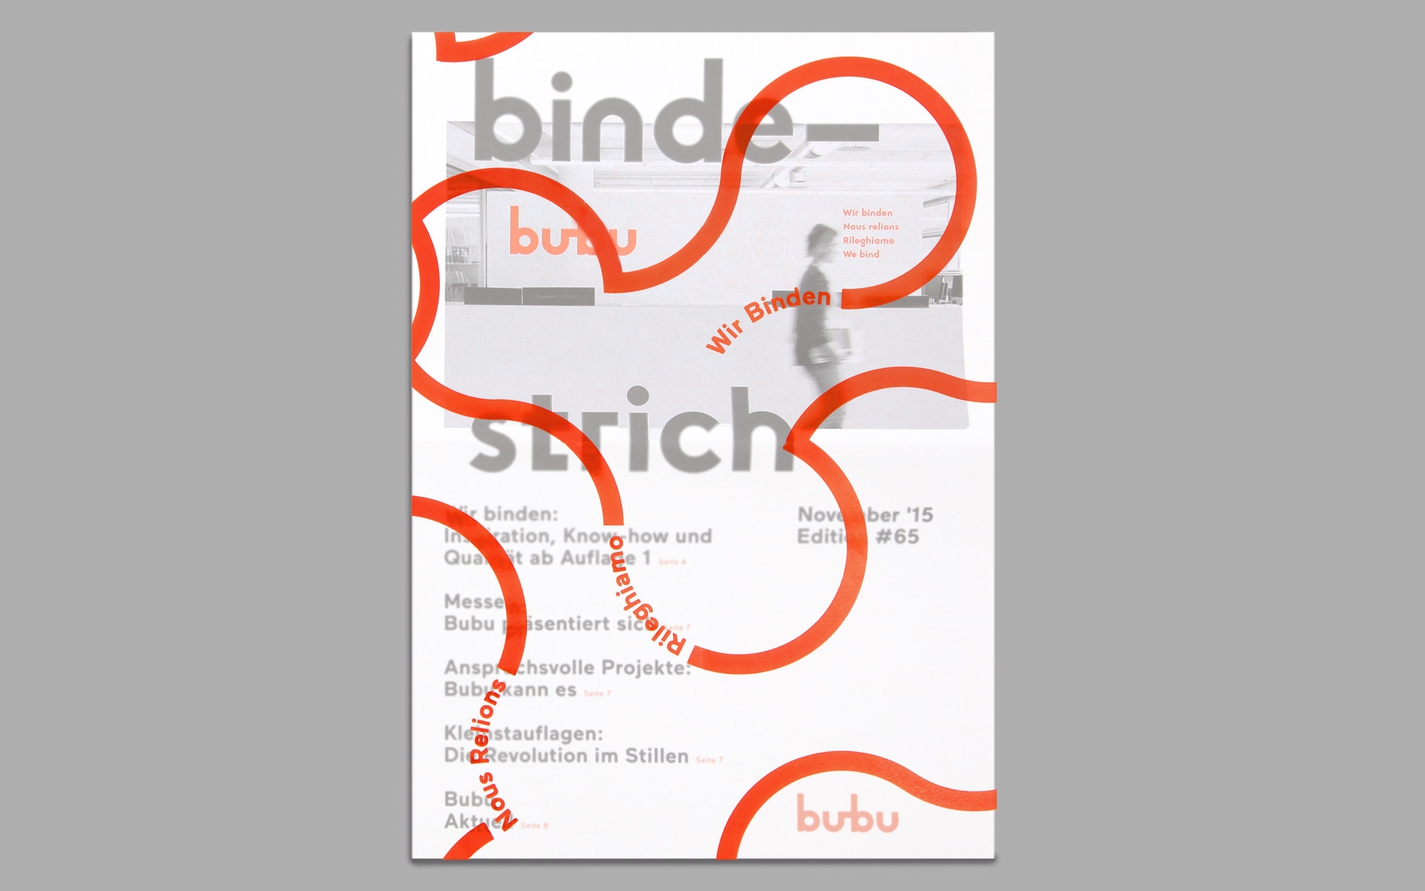 bob-design-bubu-bindestrich-1-27294.jpg